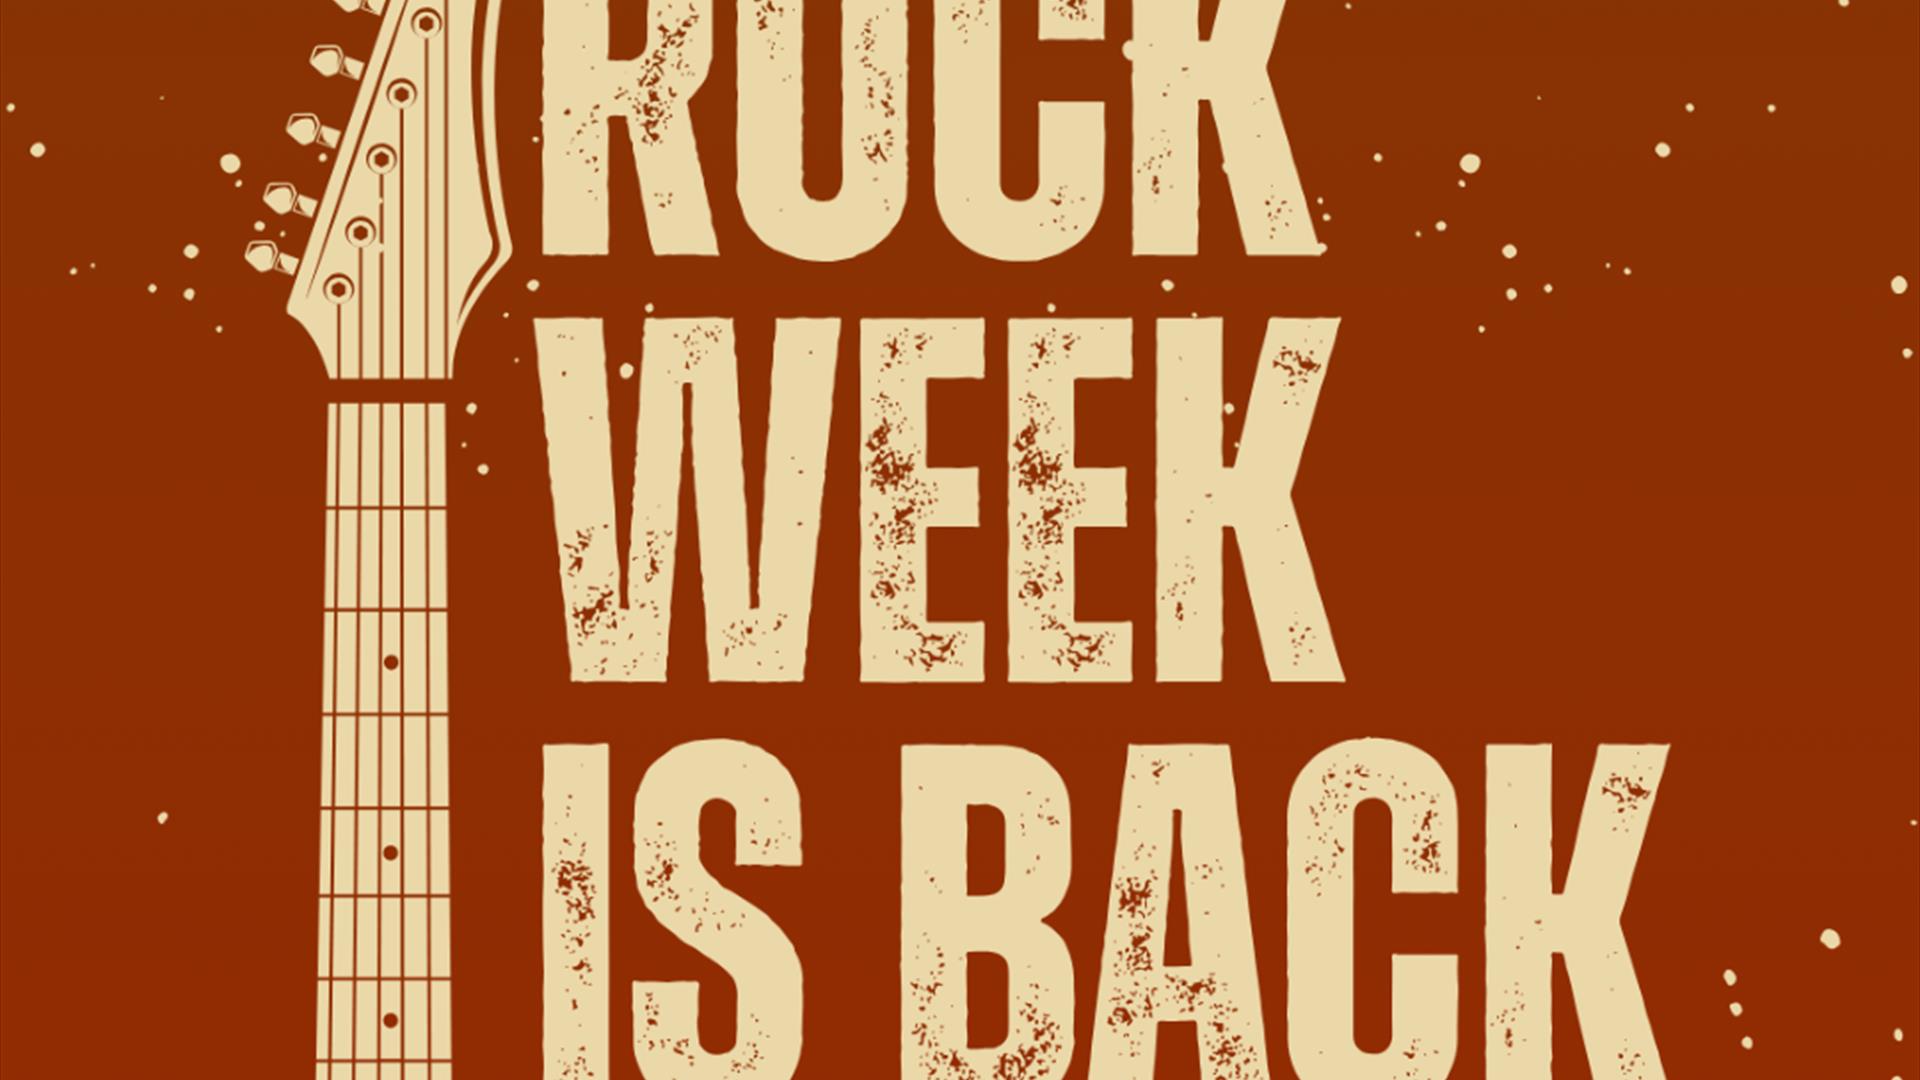 Guitar poster advertising Rock Week